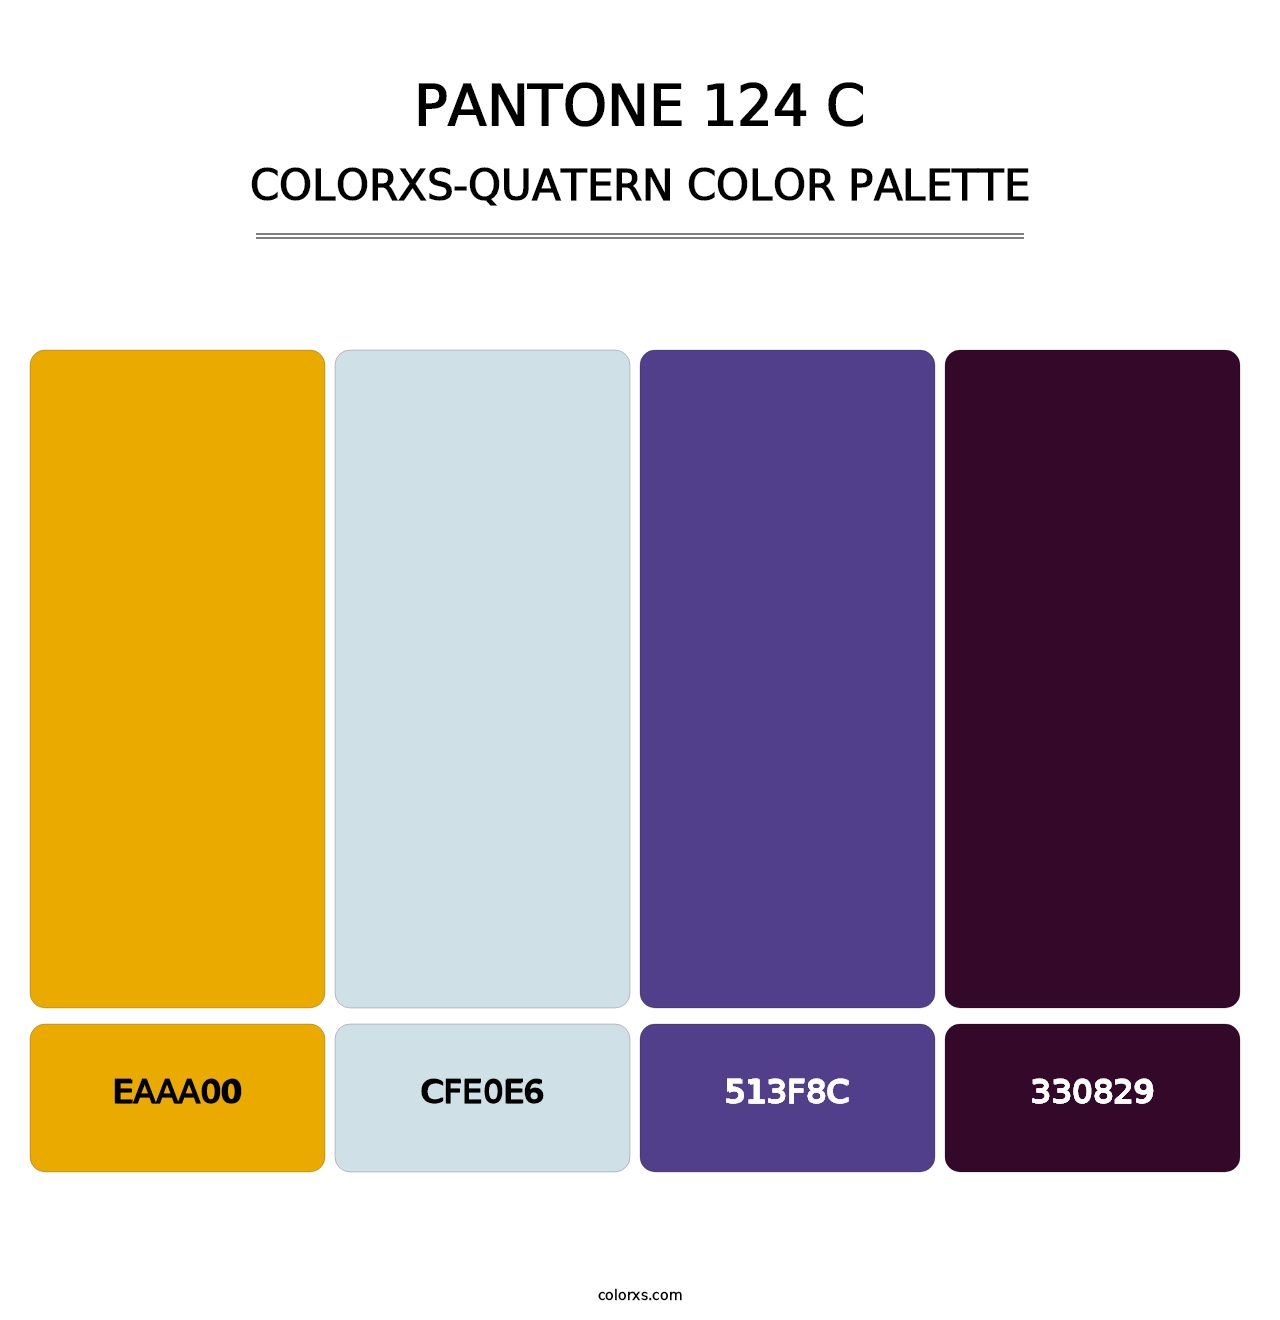 PANTONE 124 C - Colorxs Quatern Palette